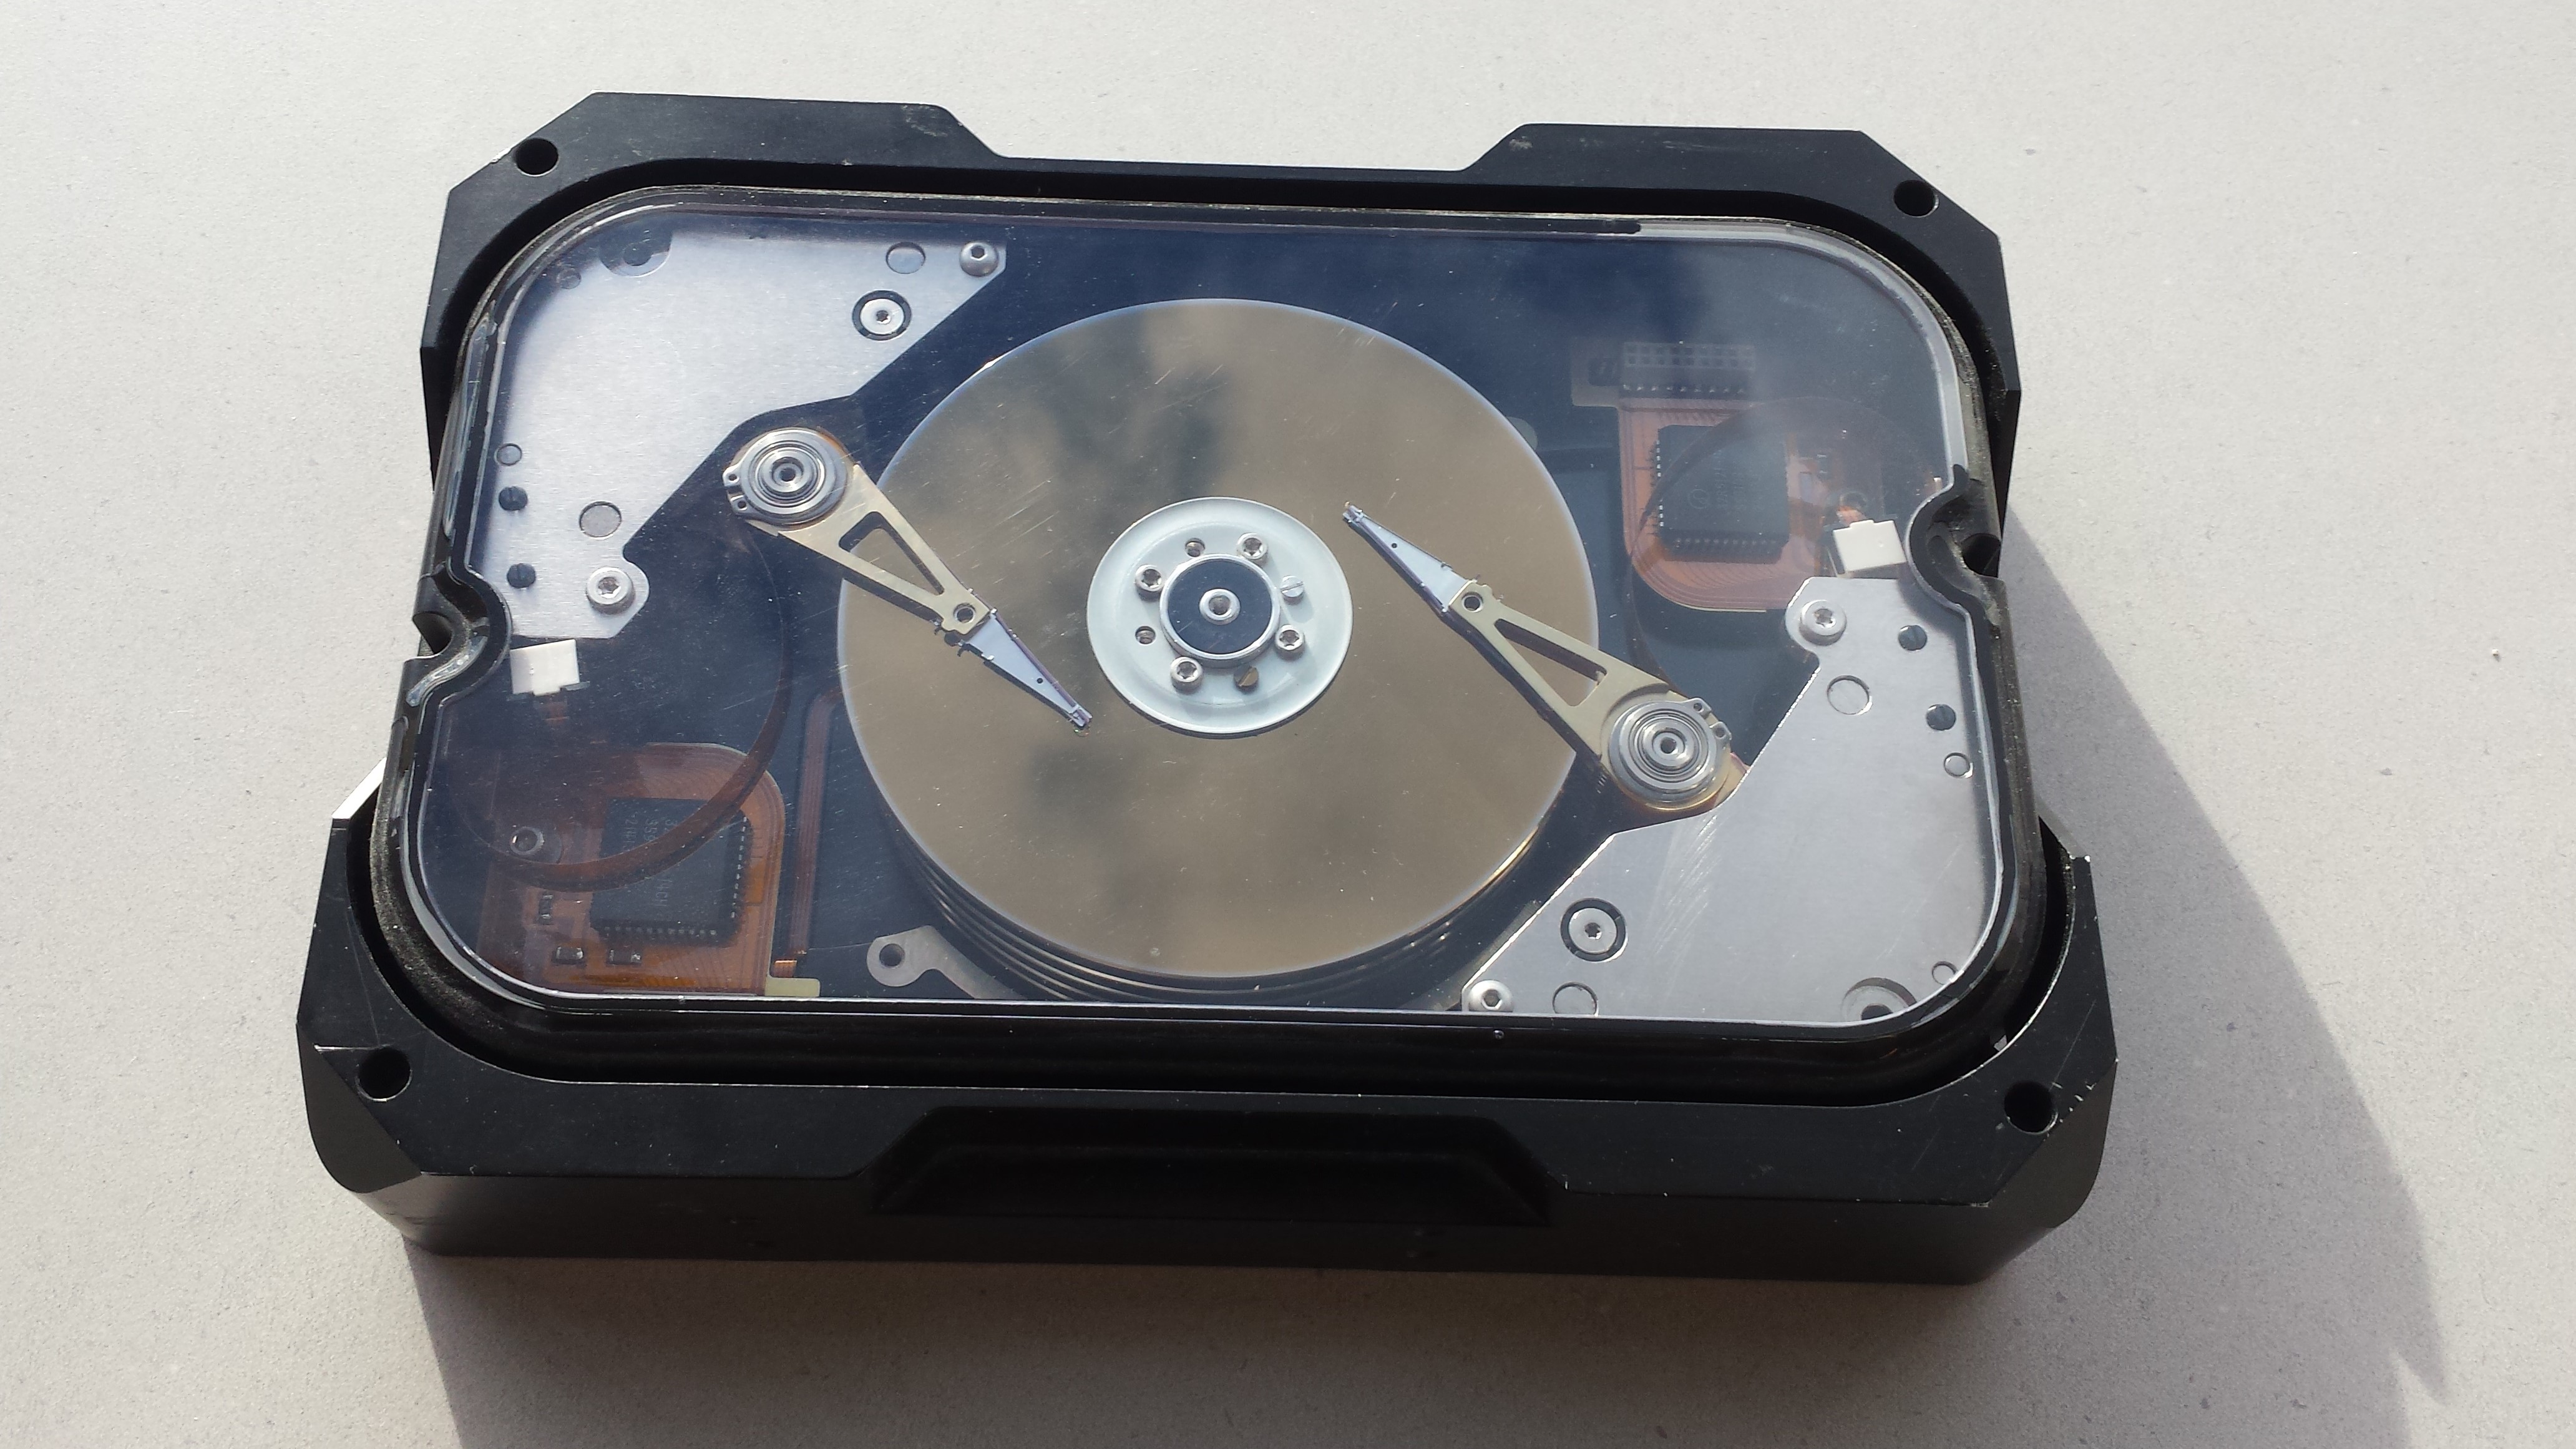 Seagate hard disk sürücülerde 480MB/s transfer hızına ulaştı